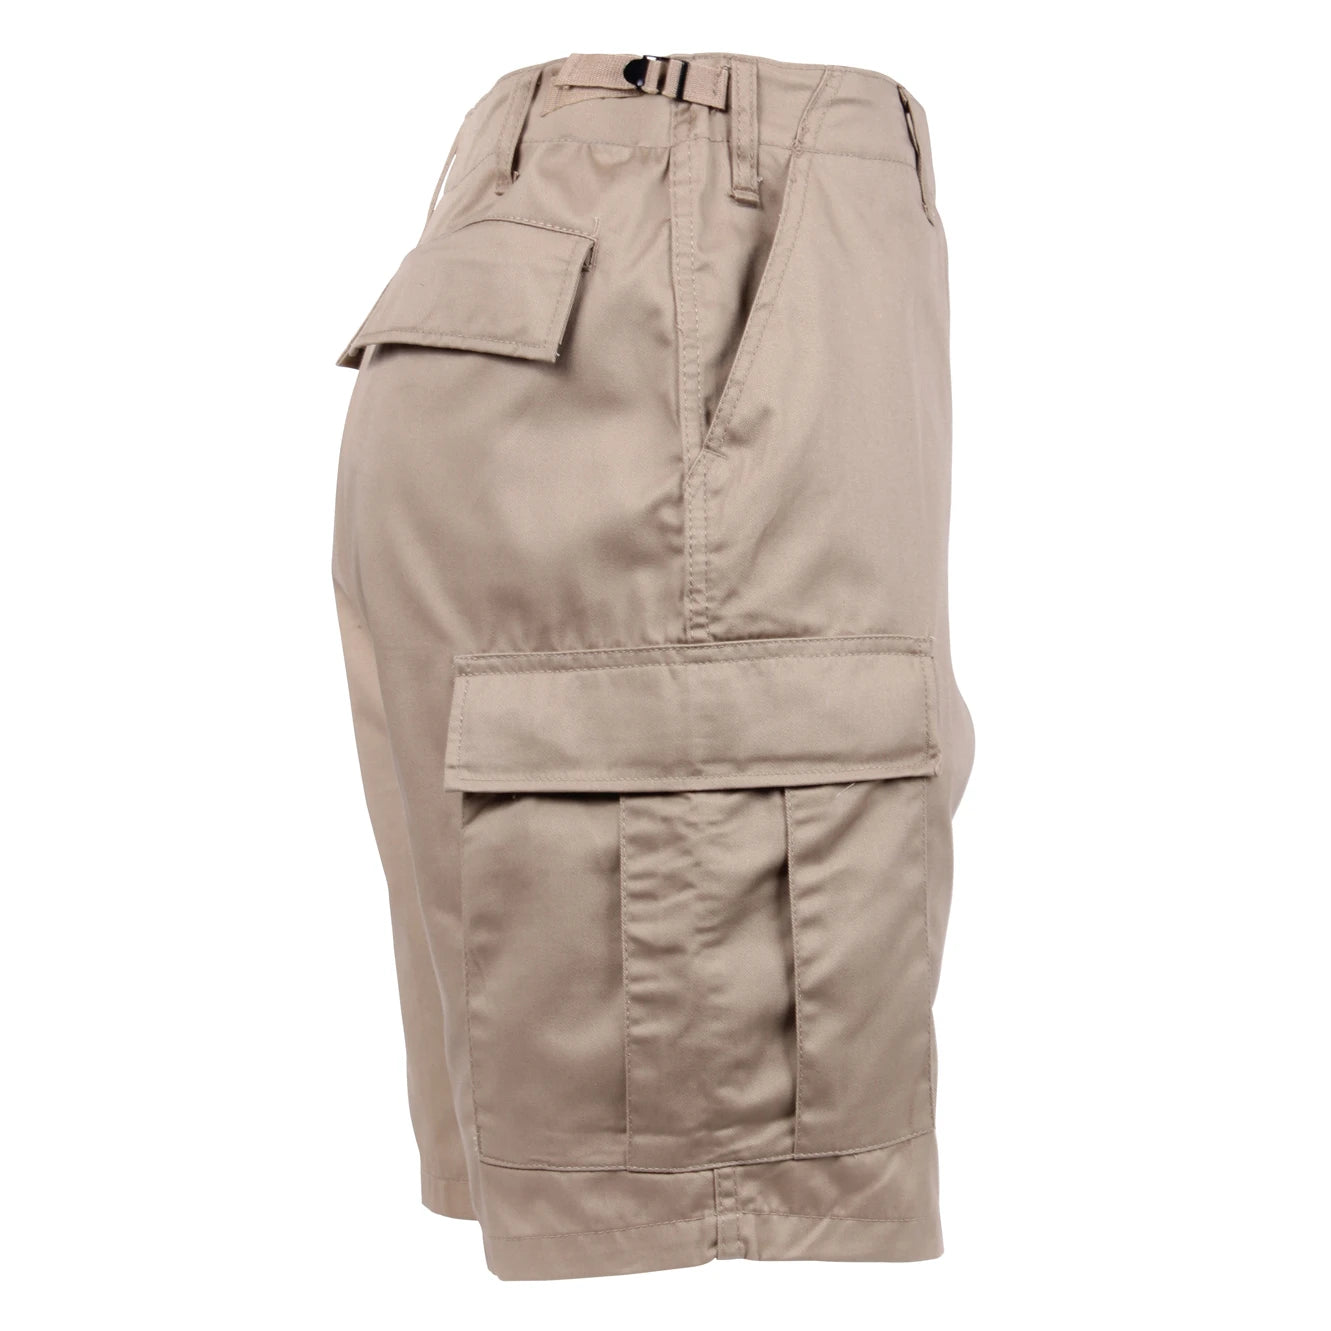 BDU Shorts - Khaki Poly/Cotton